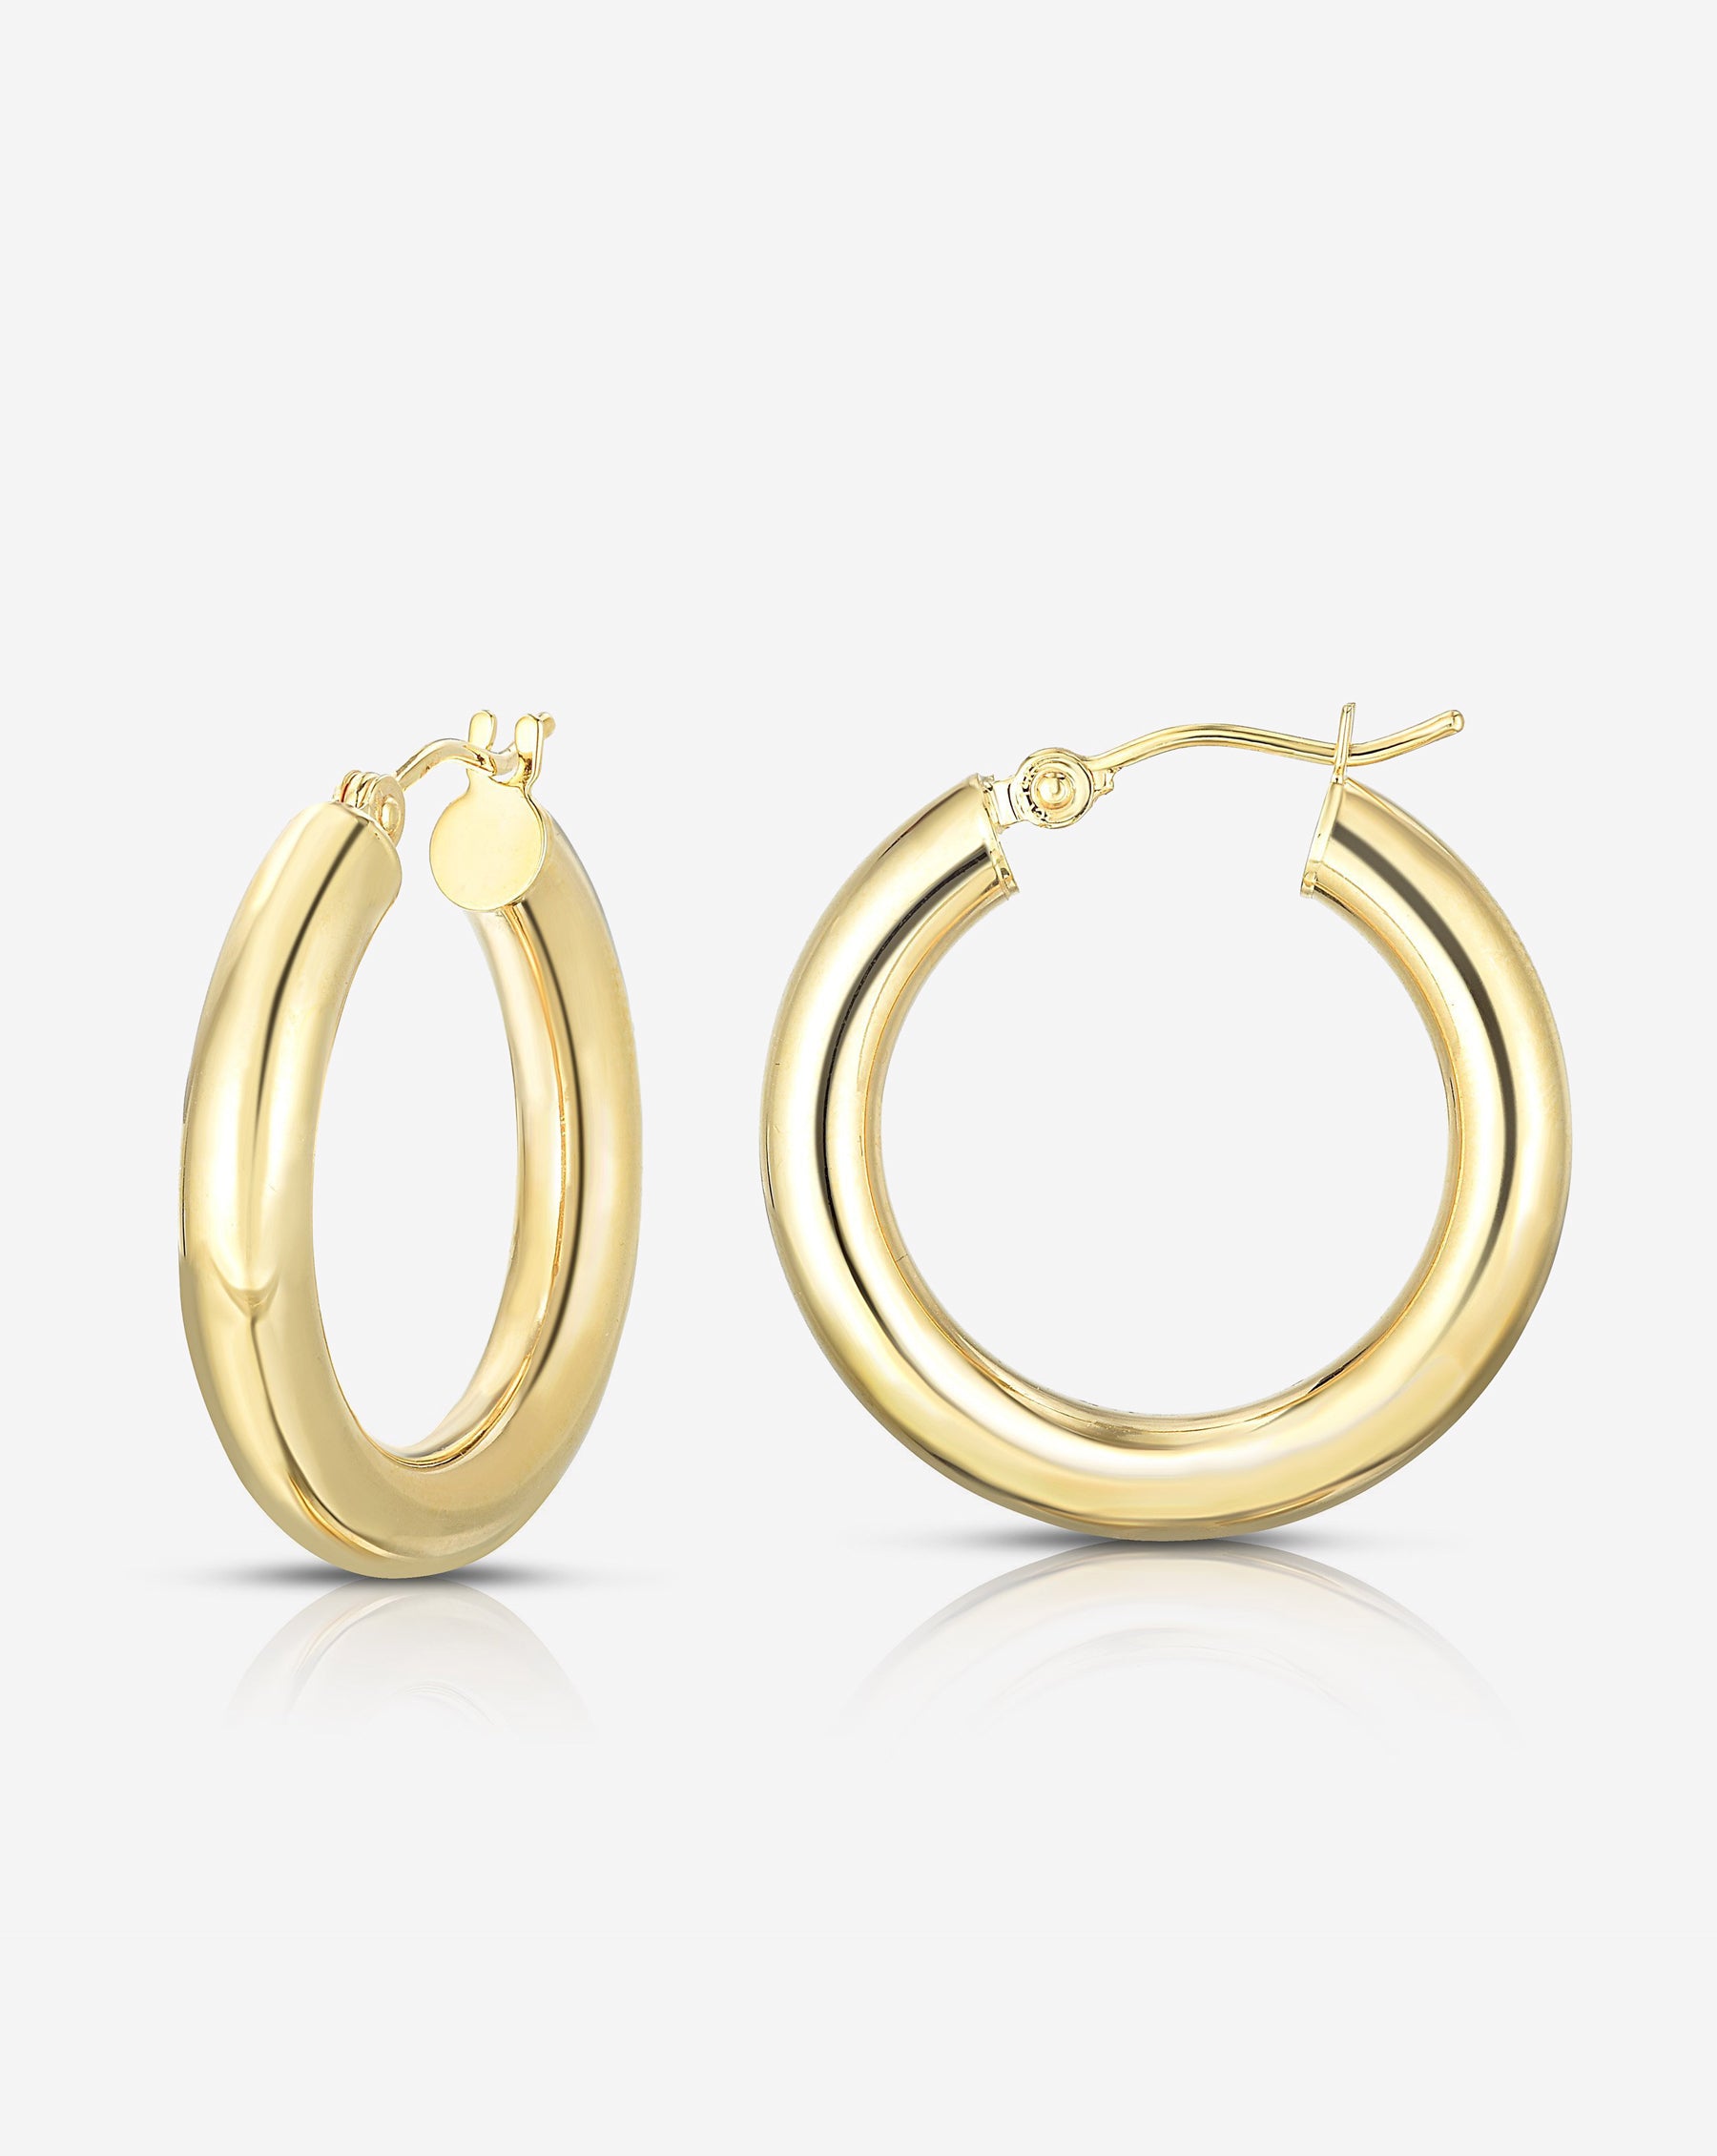 The Wiggle Hoop Earrings | BlueStone.com